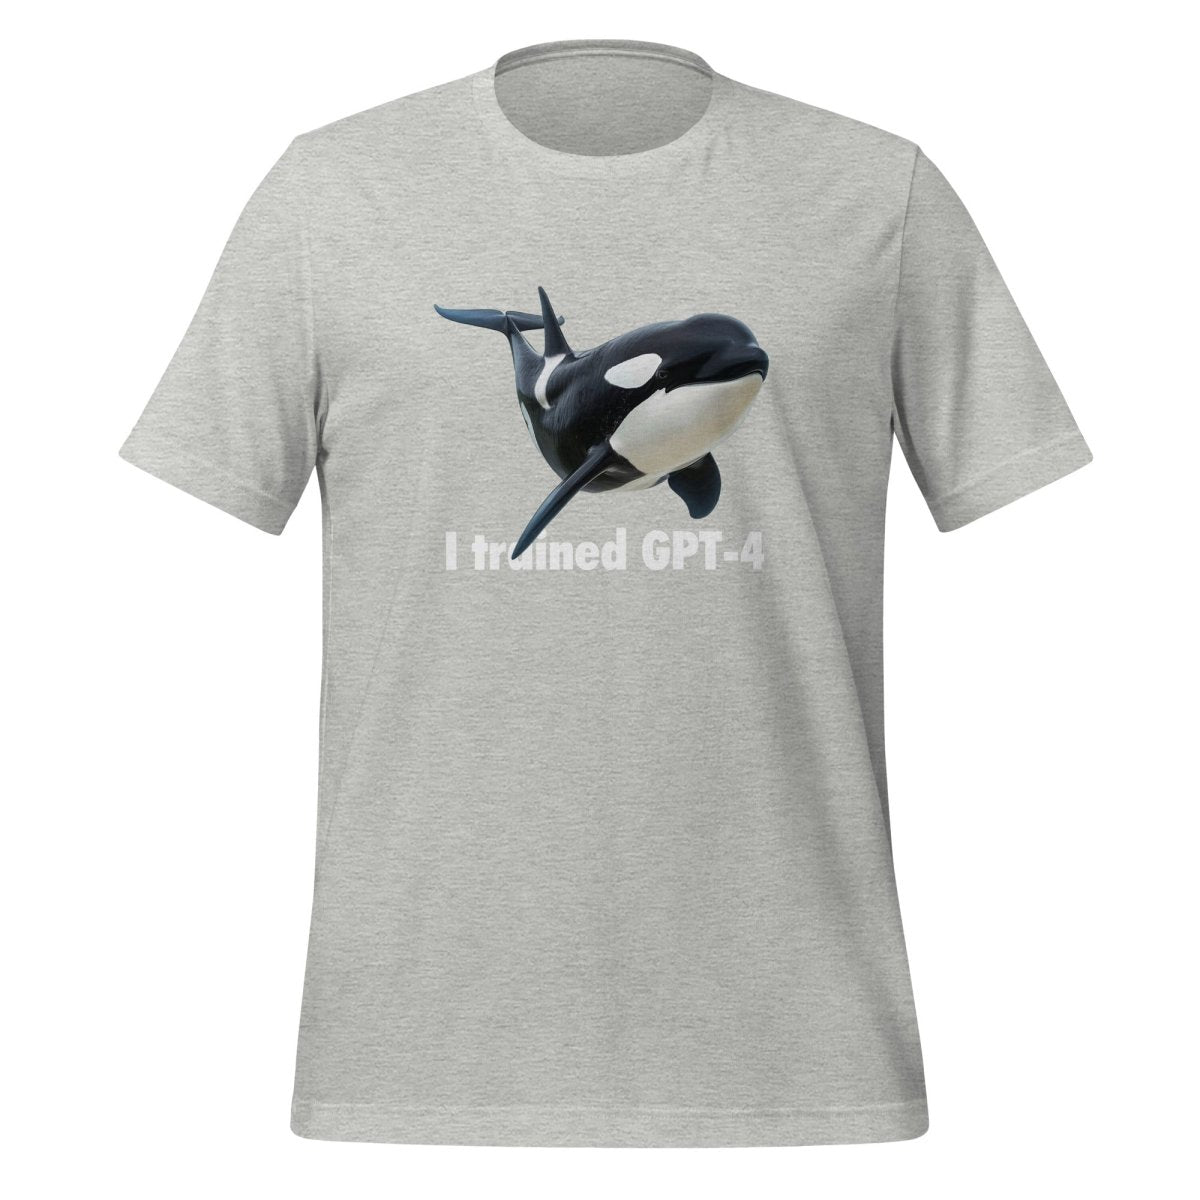 I trained GPT - 4 T - Shirt (unisex) - Athletic Heather - AI Store